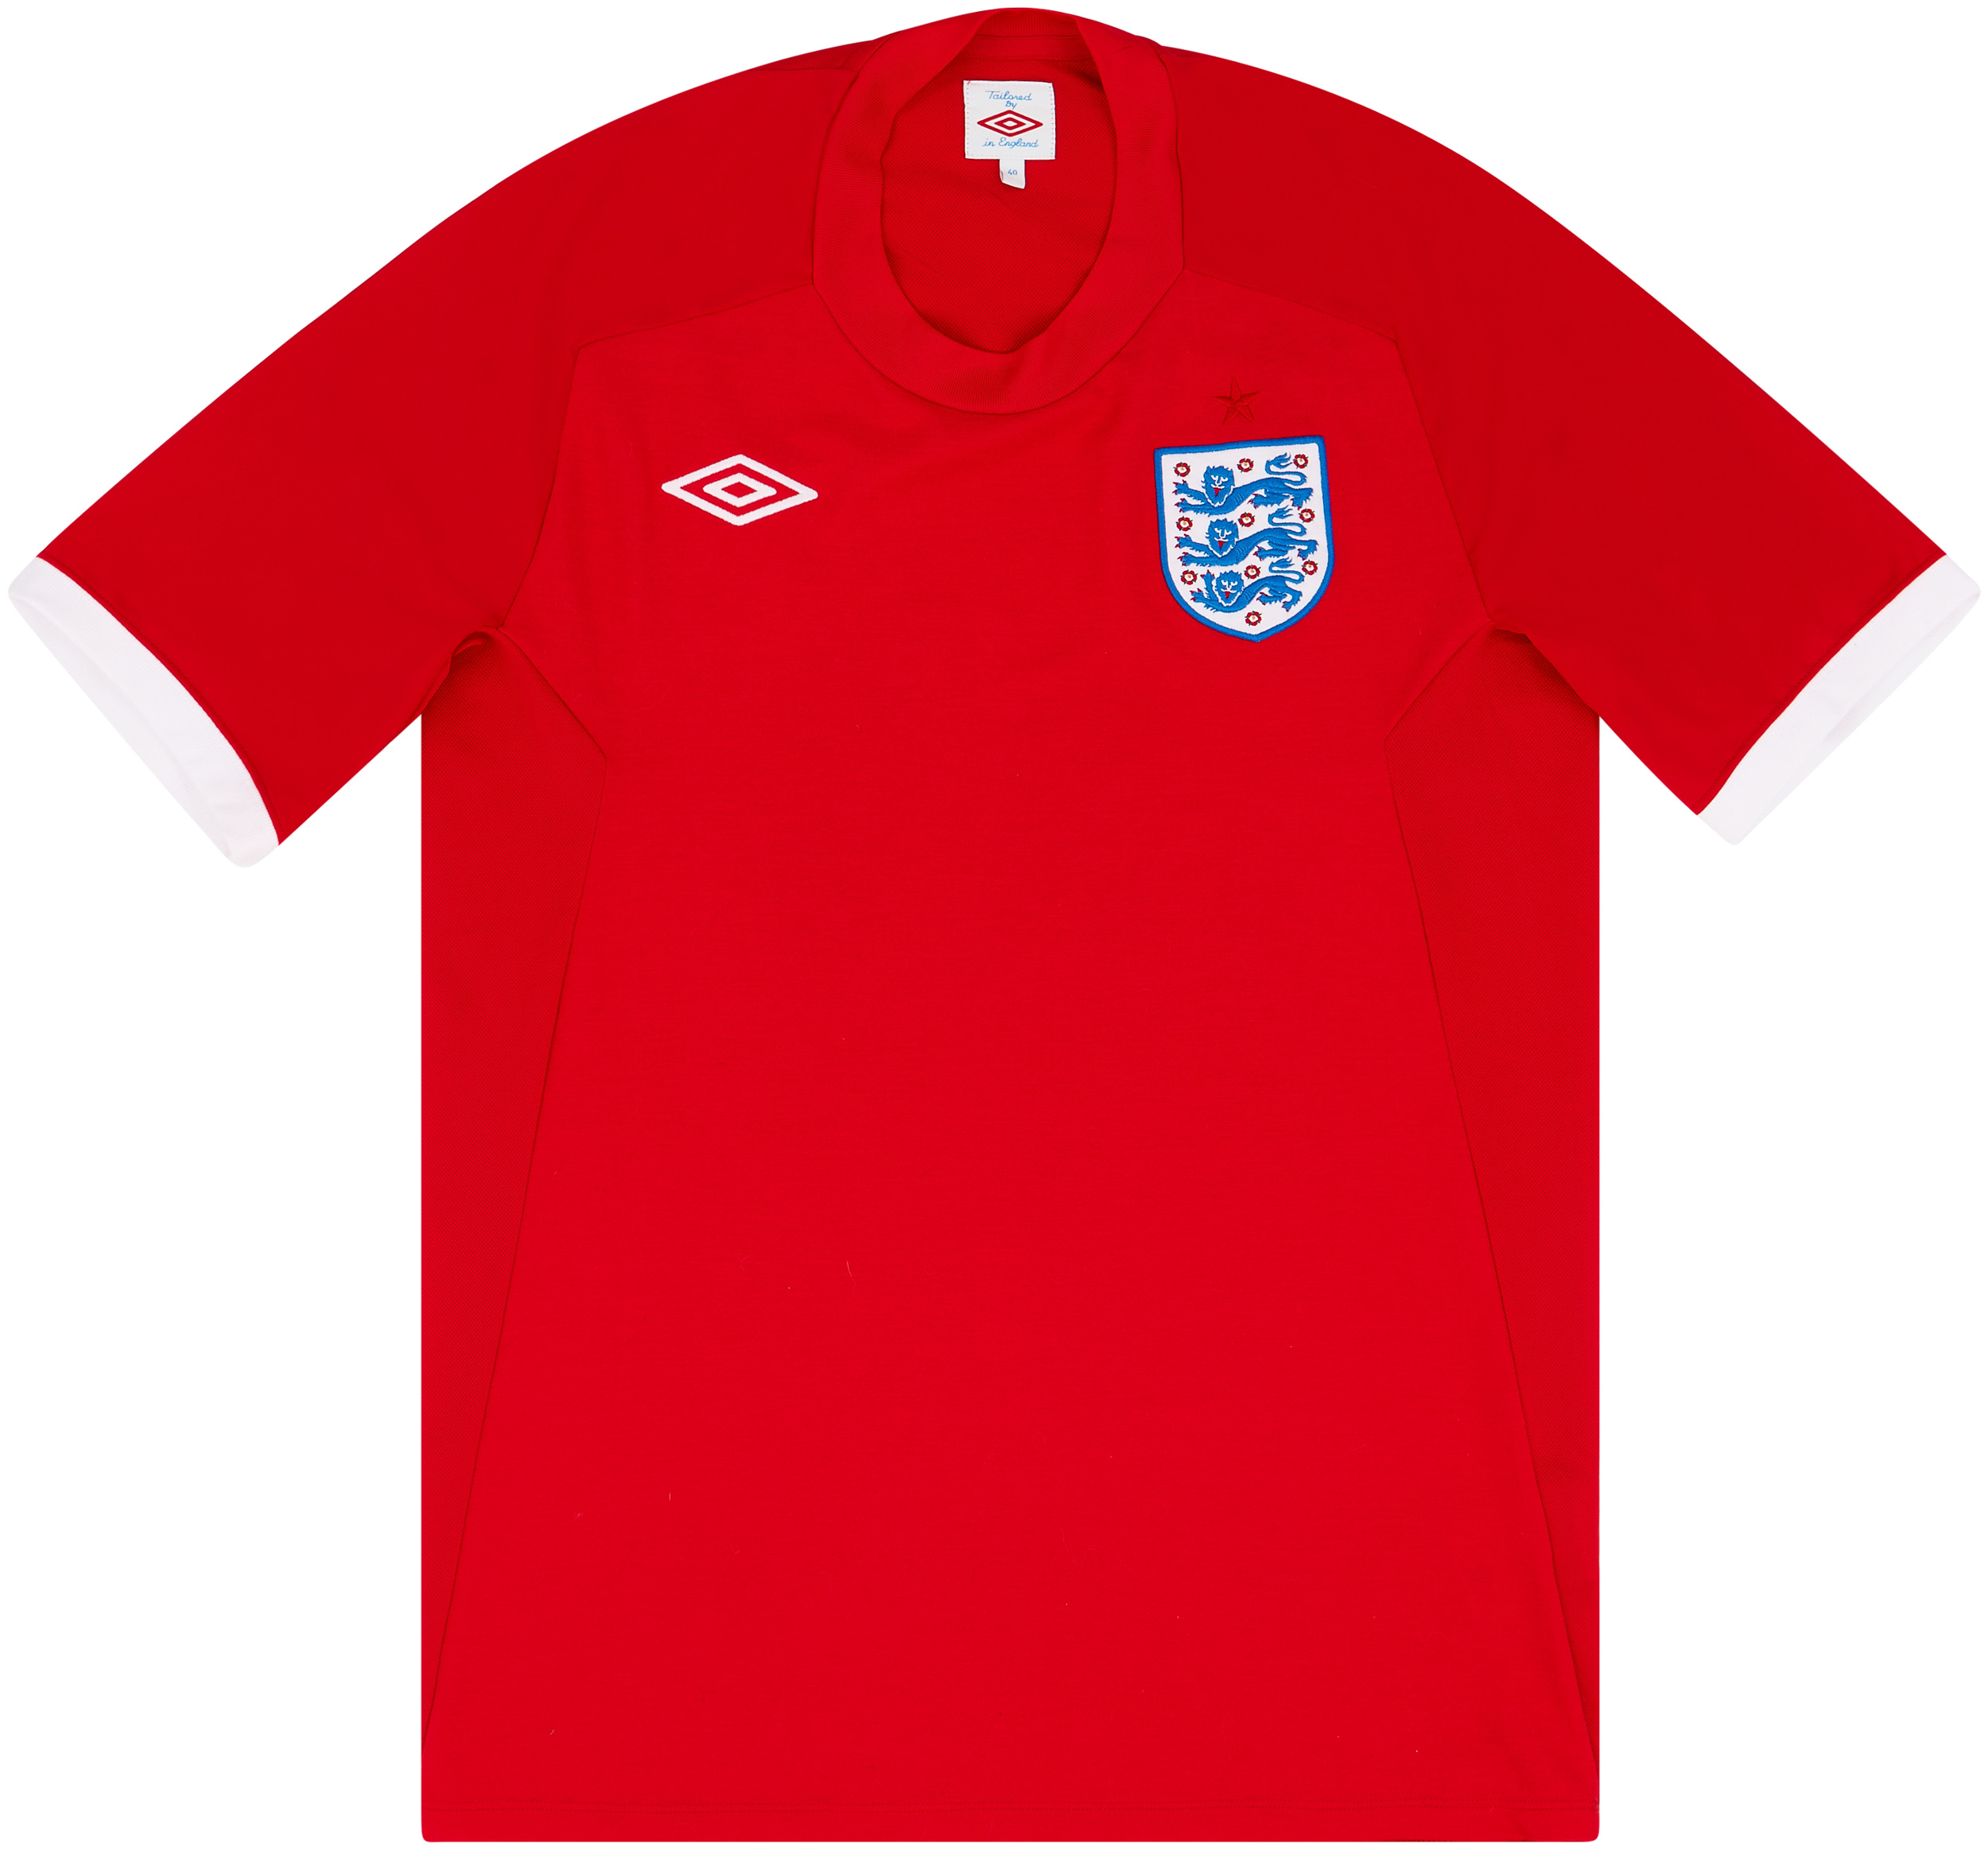 2010-11 England Away Shirt - 10/10 - ()